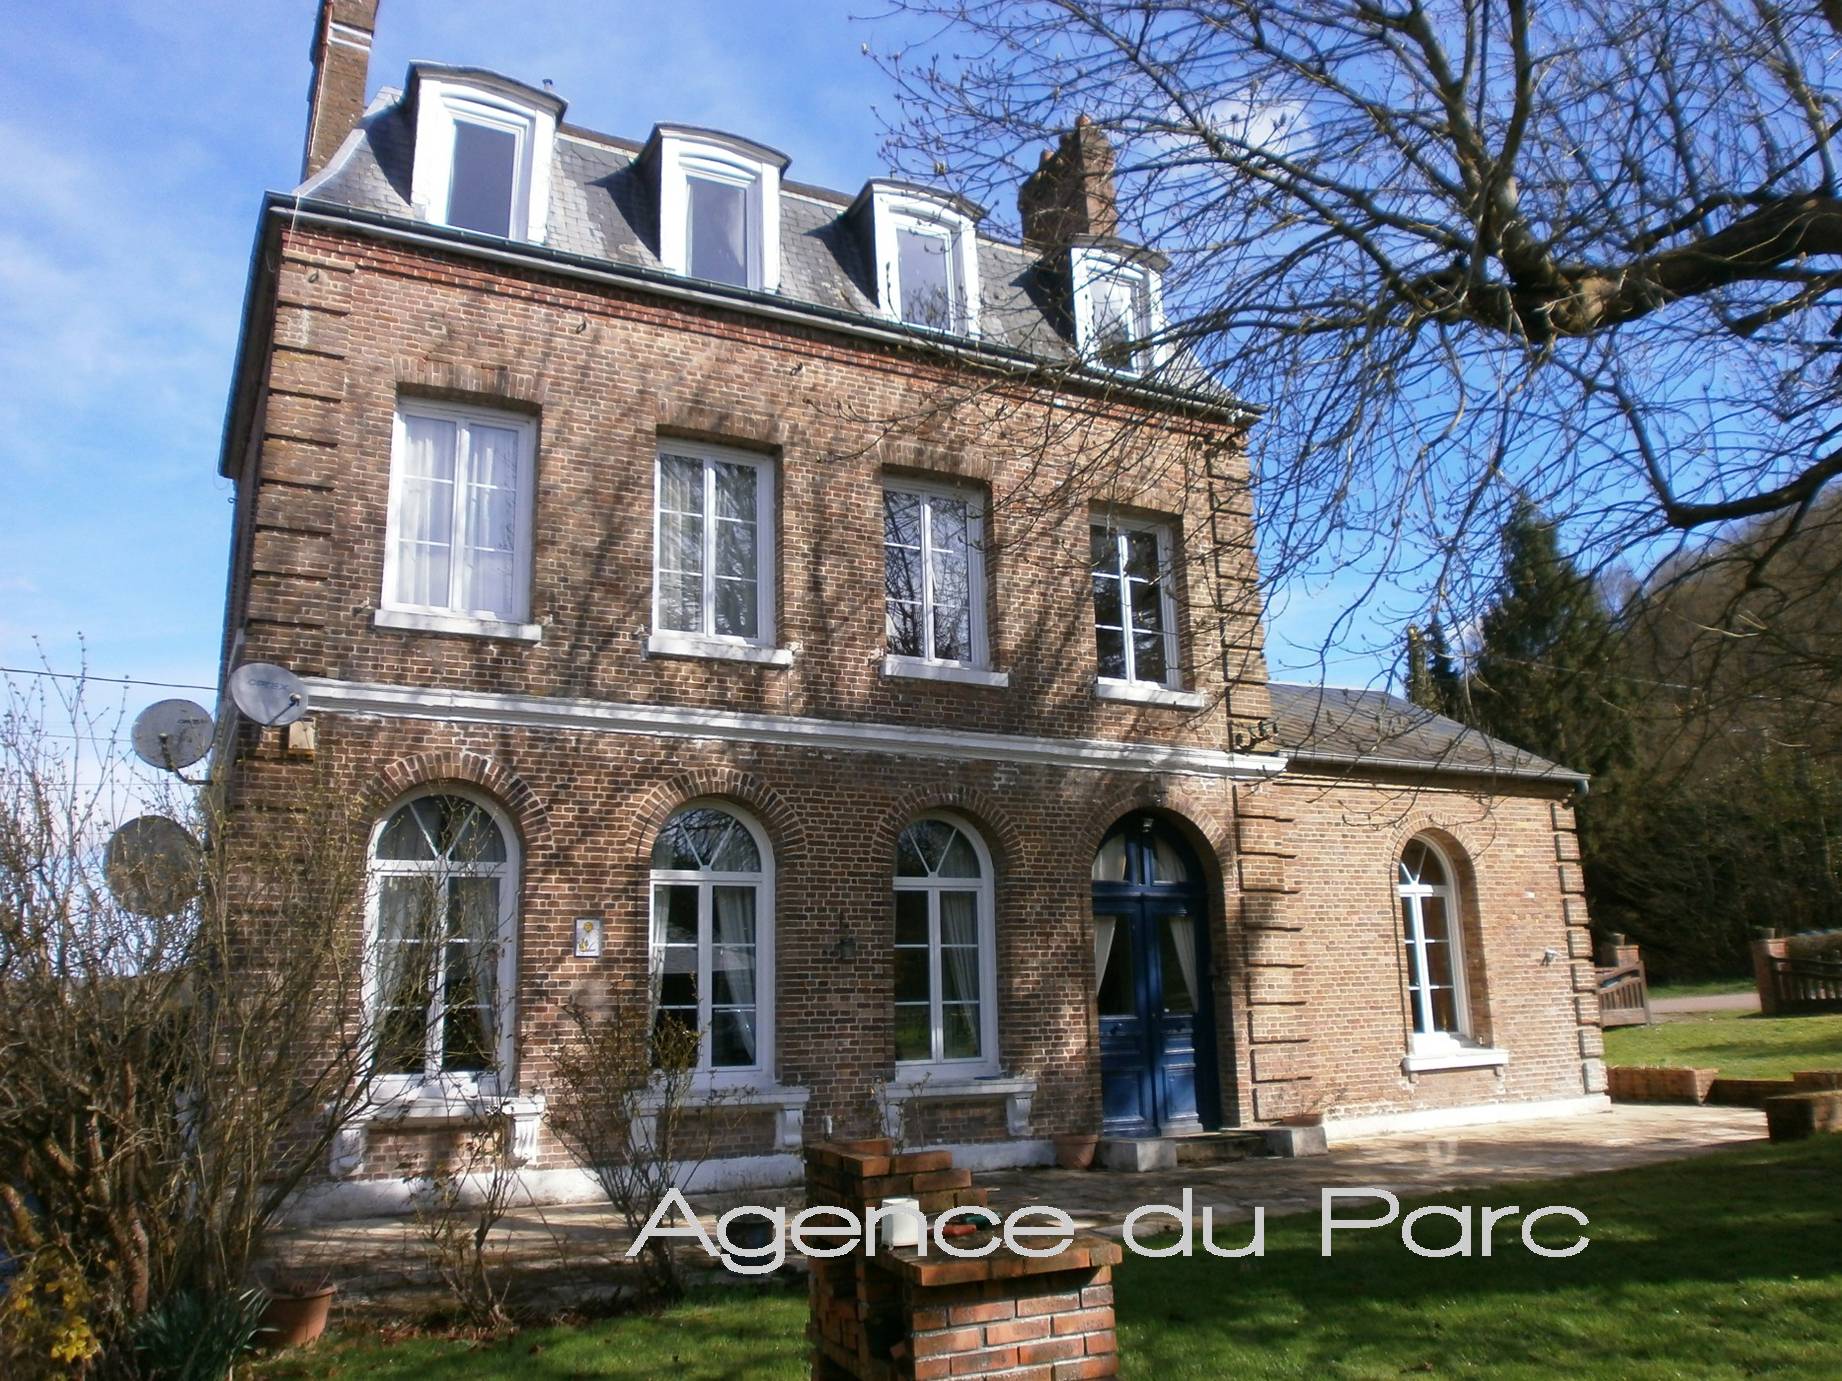 Vente d'une maison en briques de caractère Campagne de Caudebec en Caux, Vallée de Seine, 76